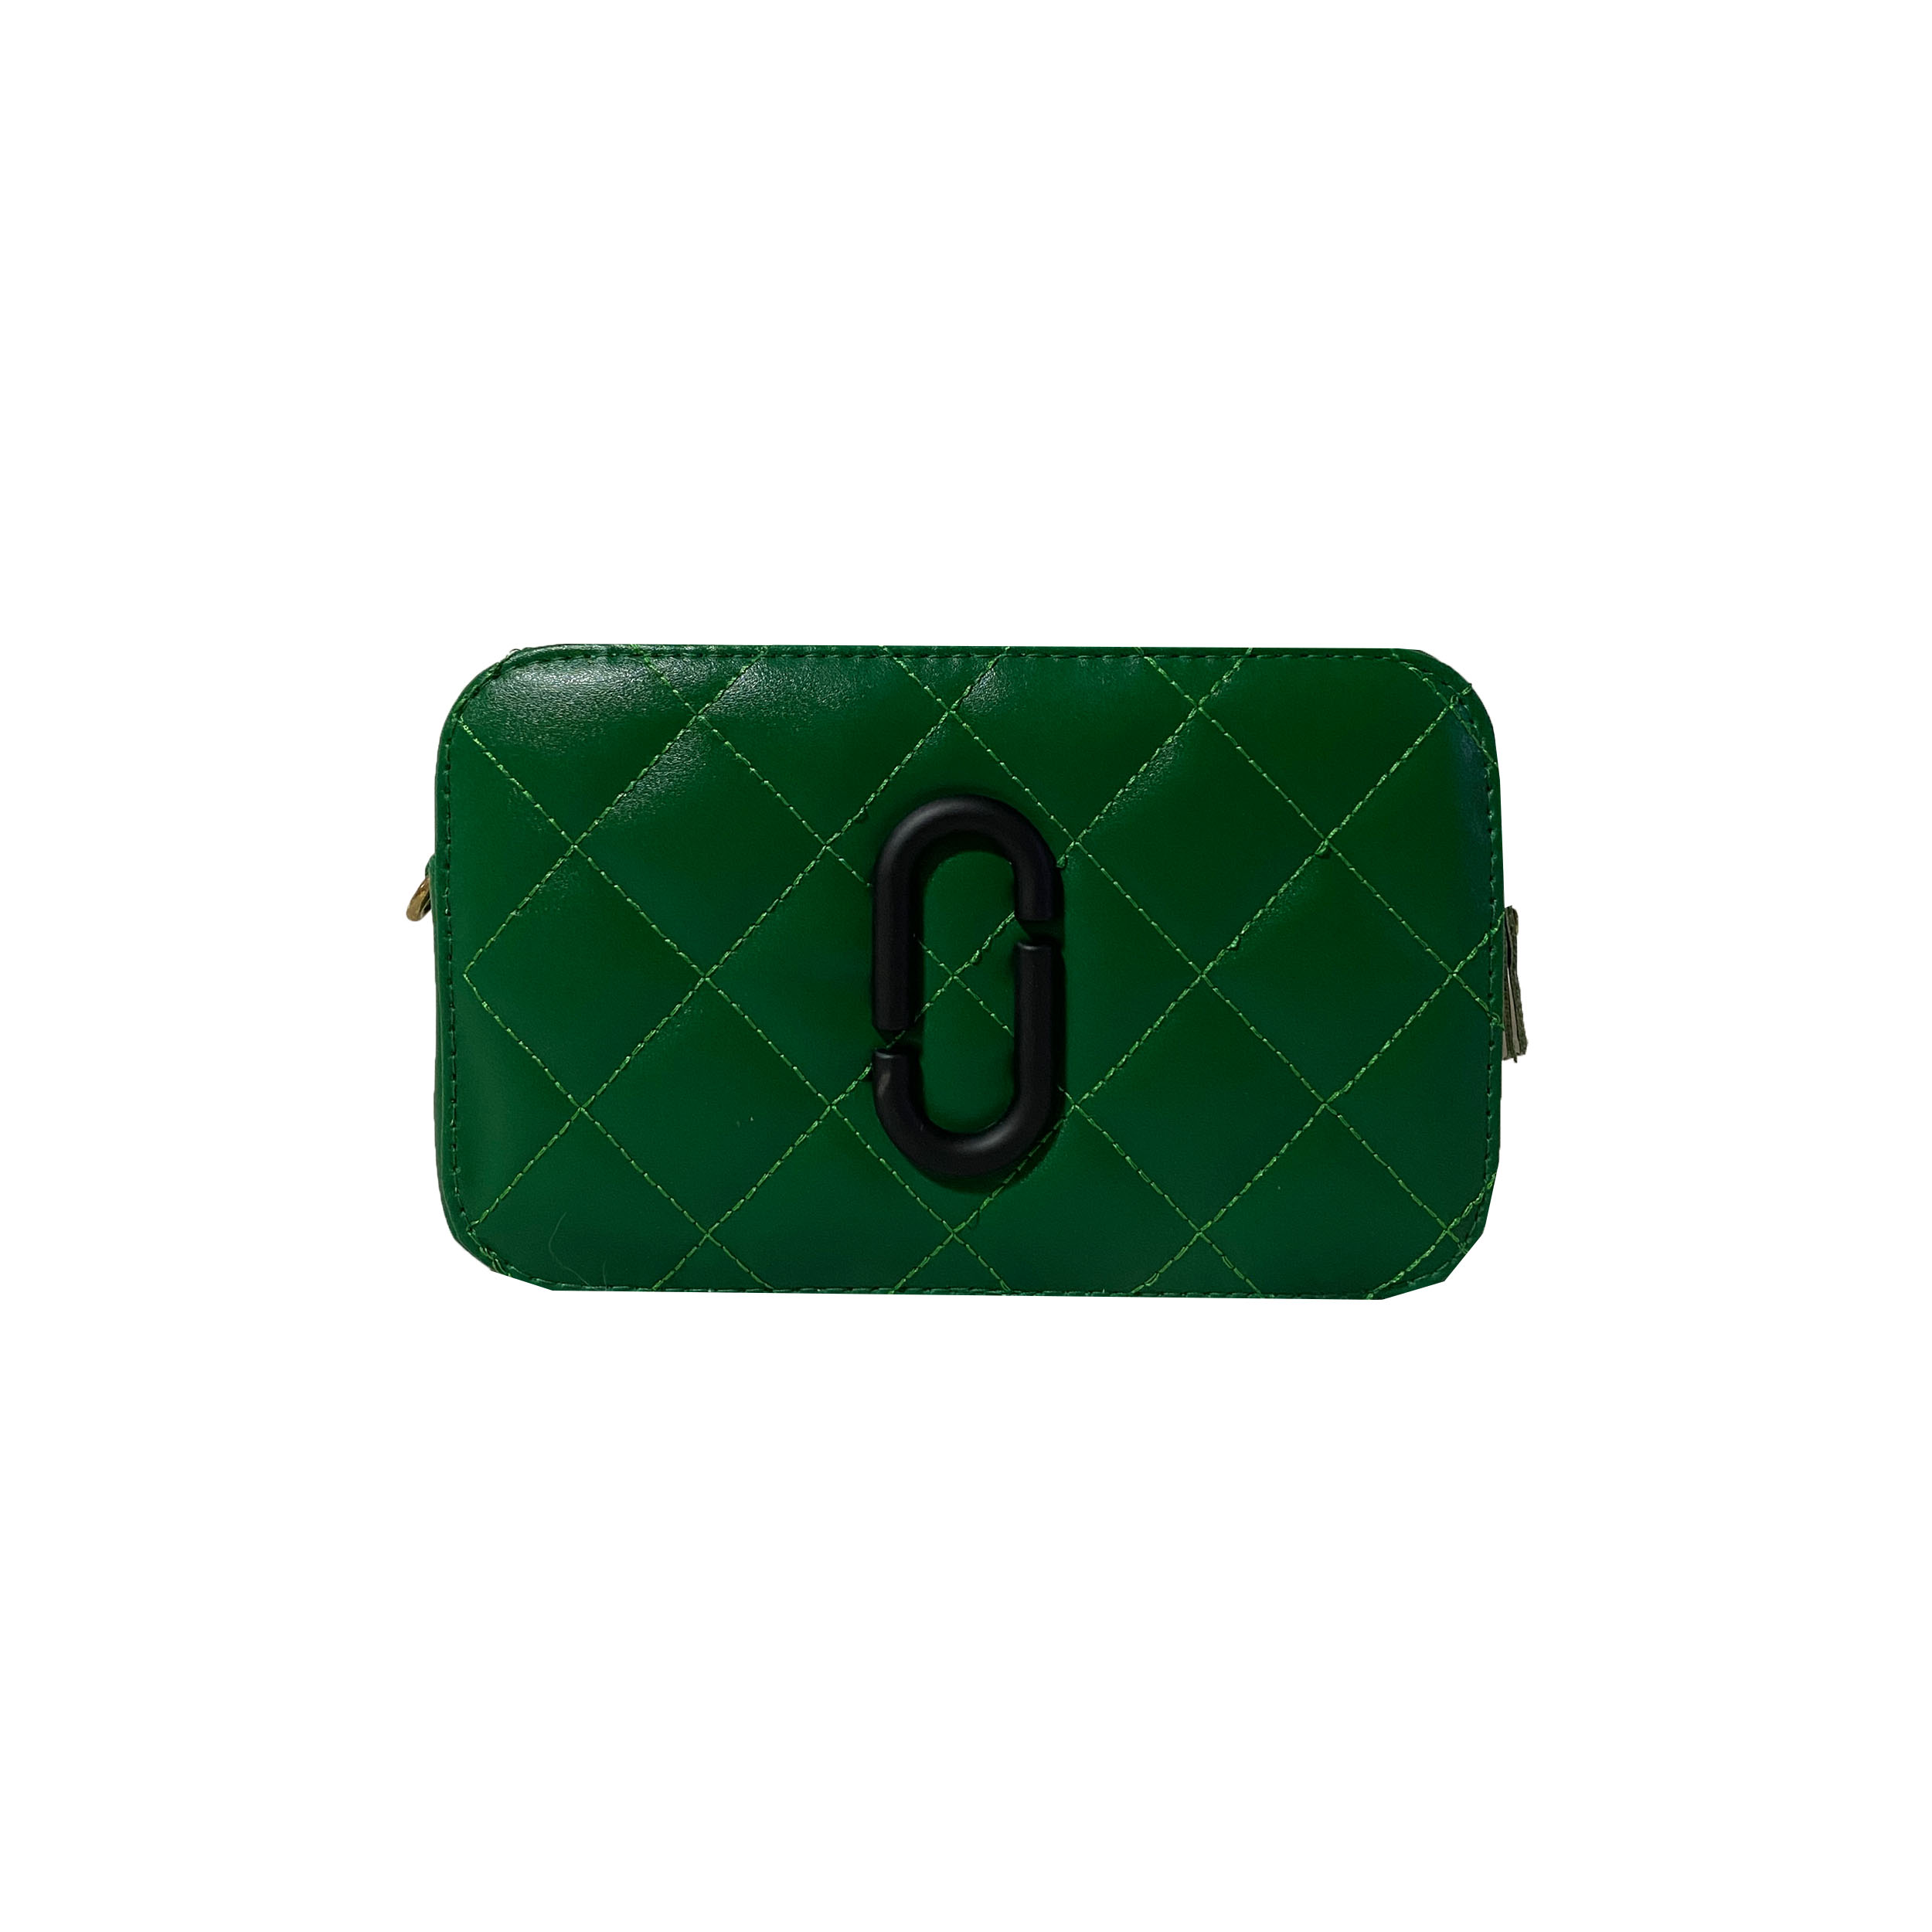 کیف دوشی زنانه مارک جکوبس مدل 59.2 -  - 1